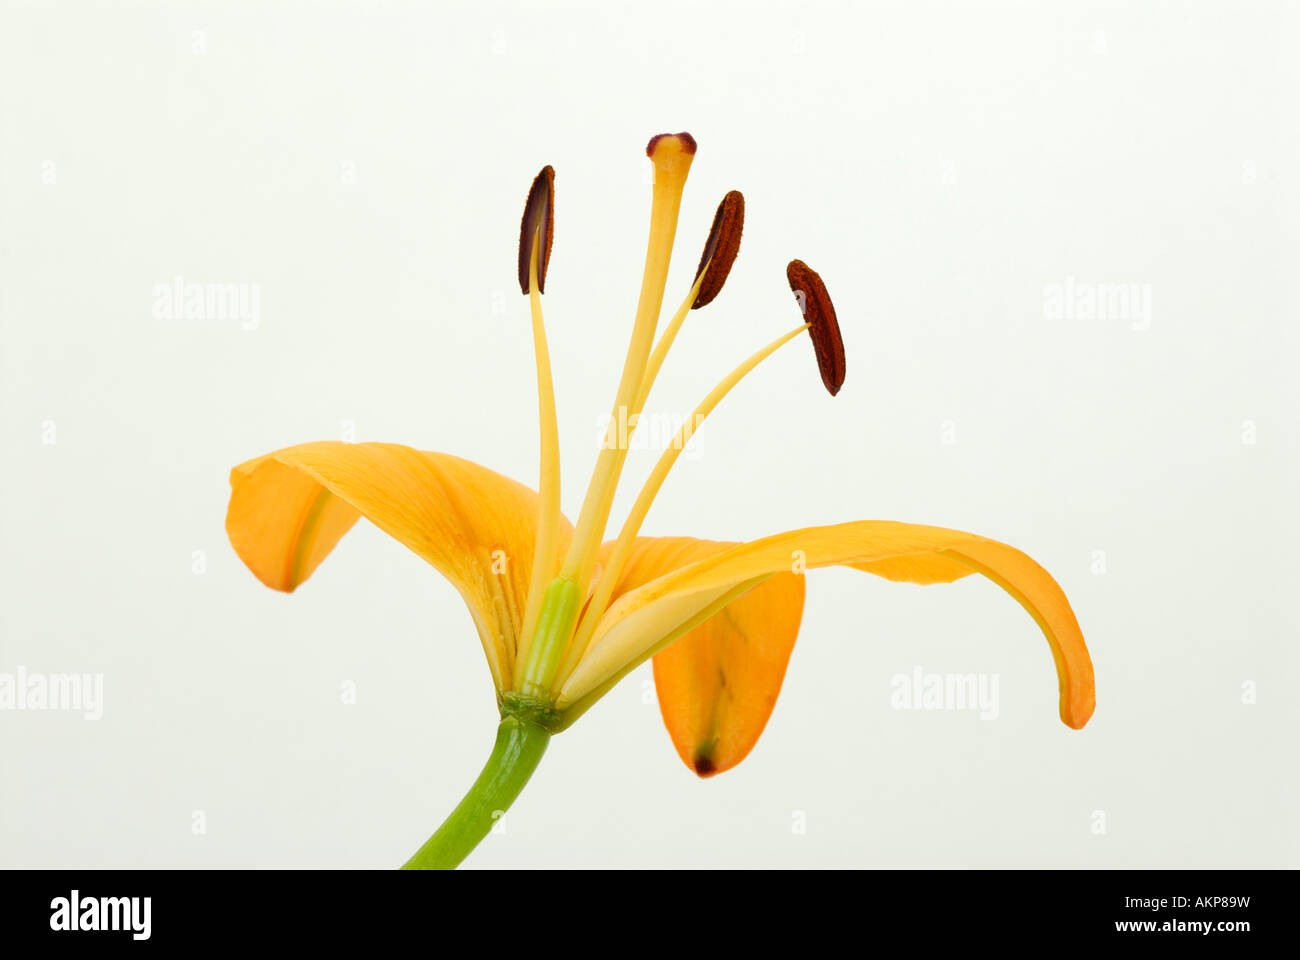 Sezione trasversale del fiore che mostra ovaia, carpel, stami e altre strutture riproduttive parti Foto Stock